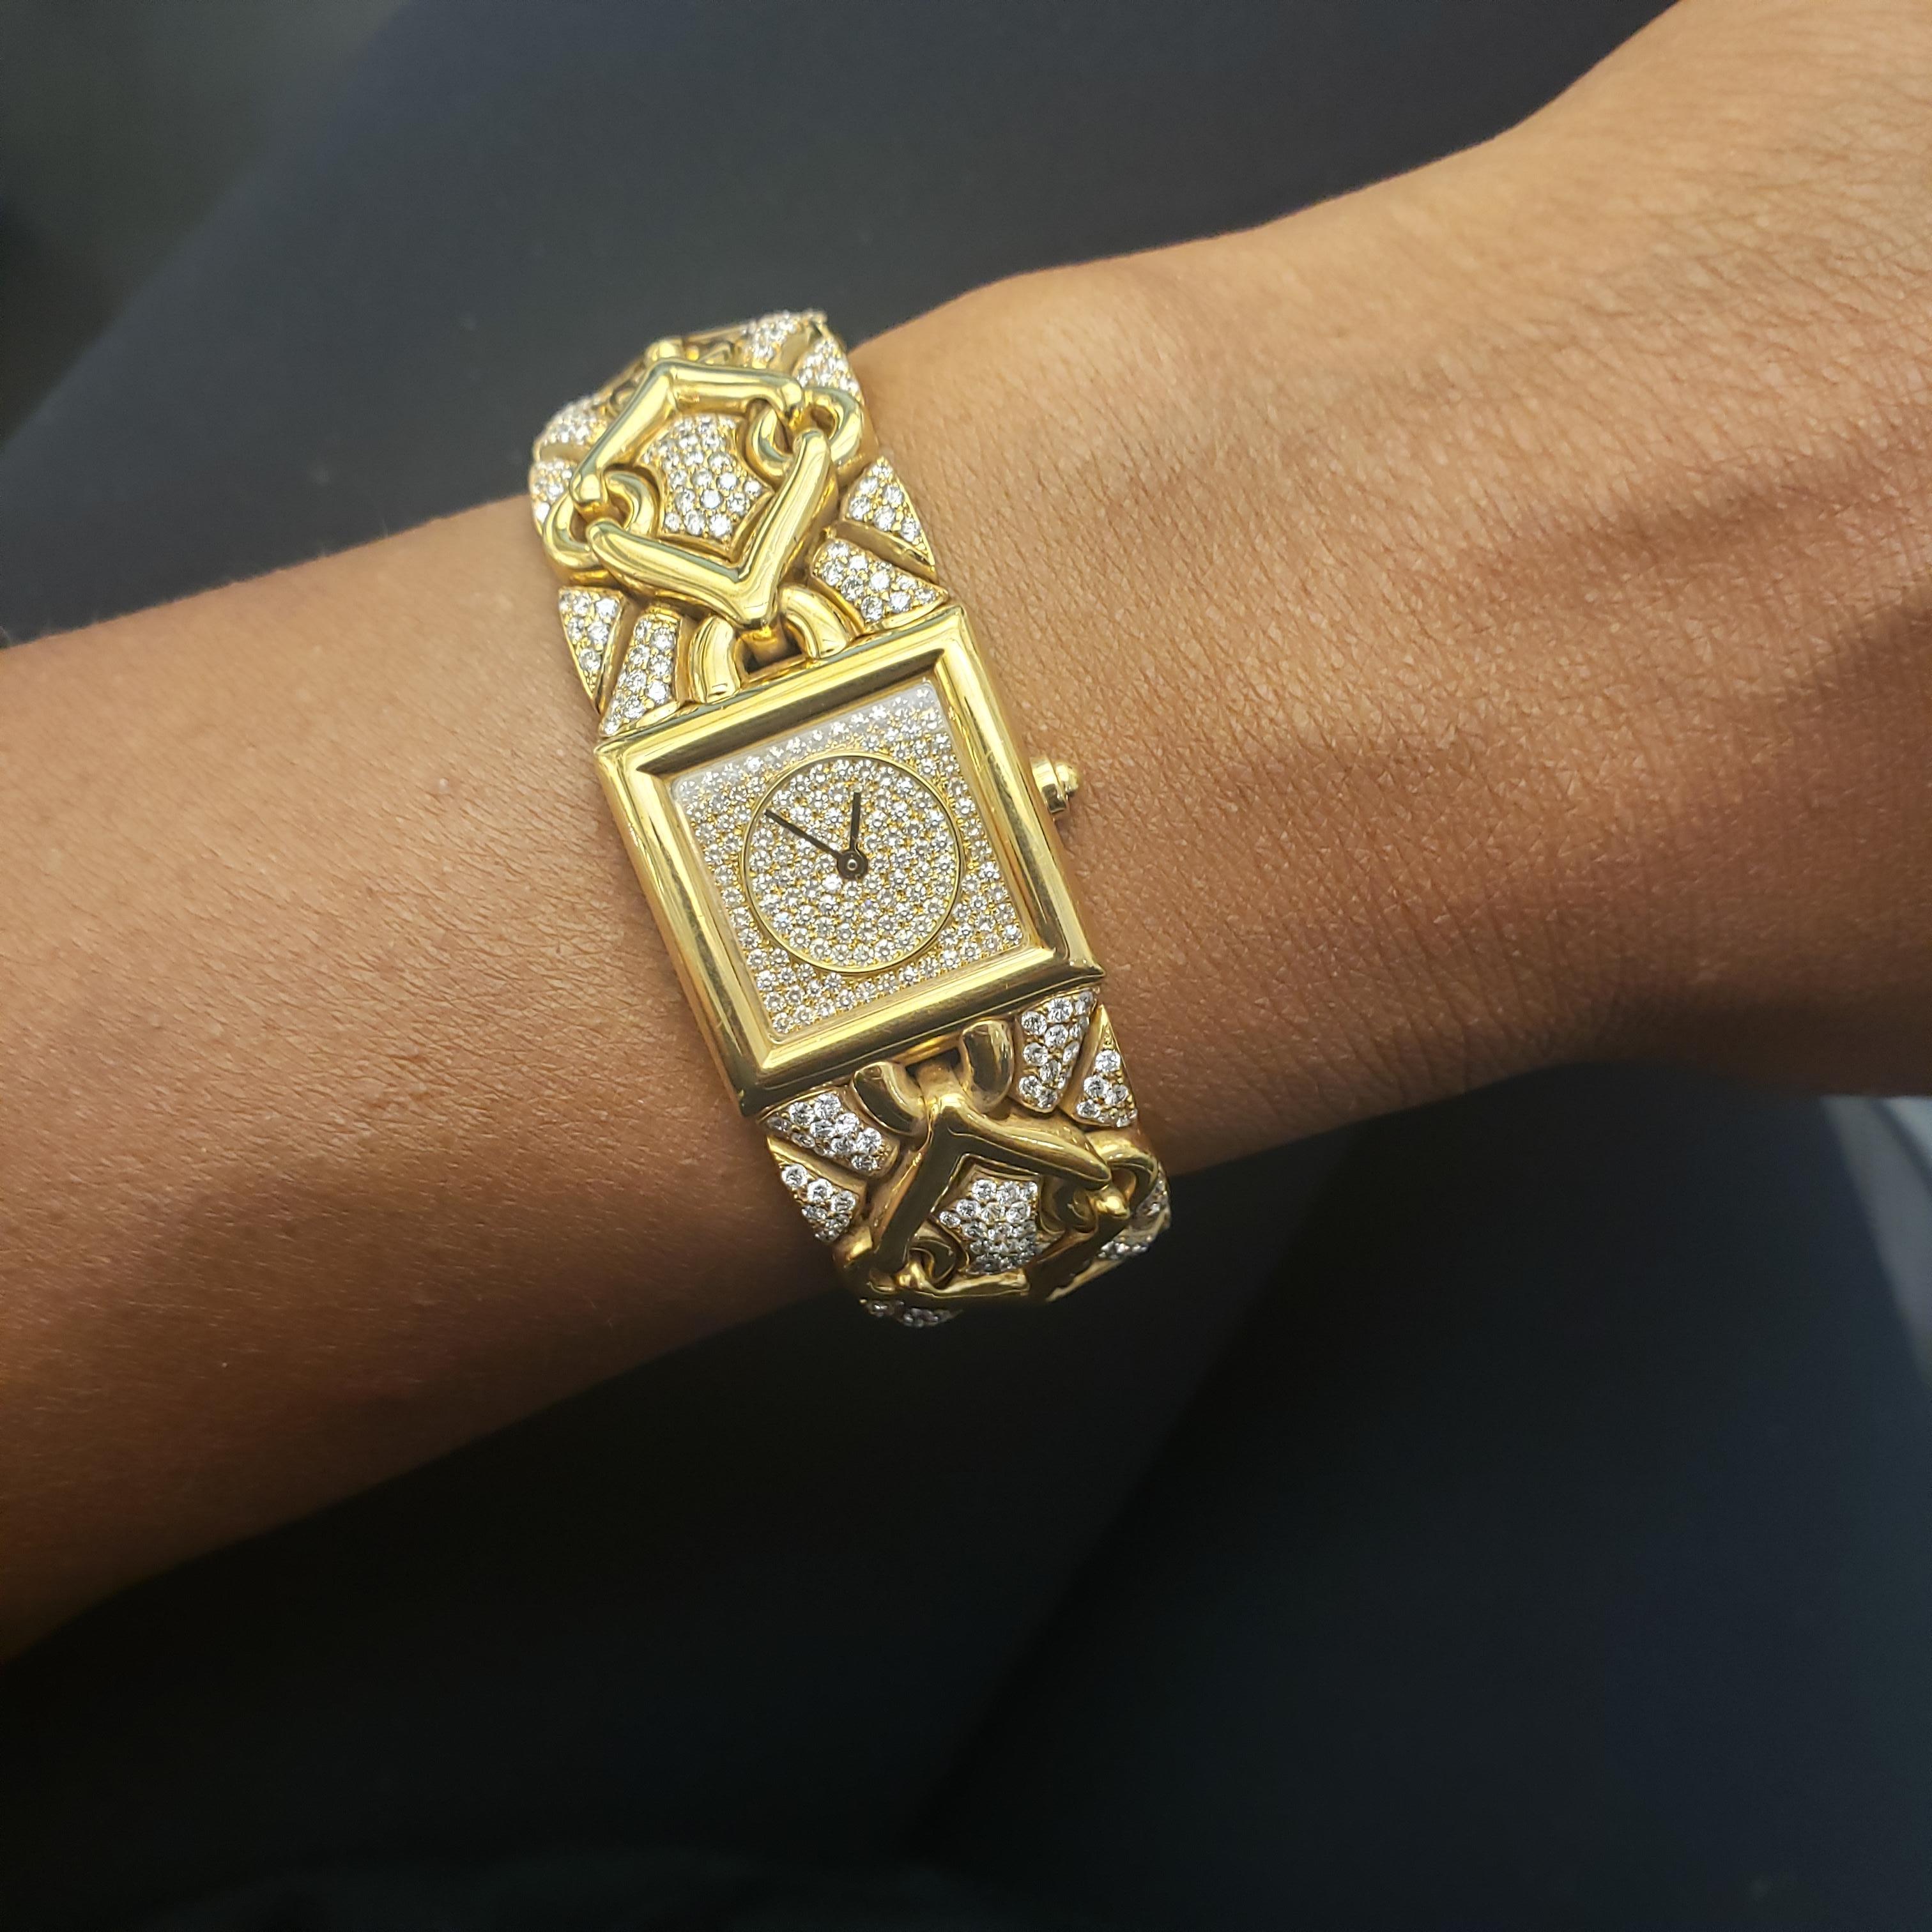 Bvlgari 'Trika' Gold and Diamond Ladies Watch 4